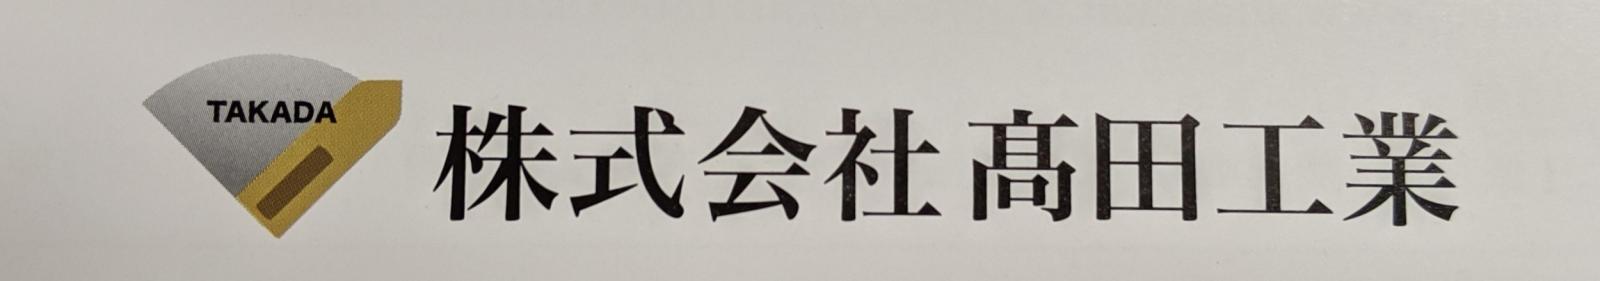 ロゴ:株式会社髙田工業